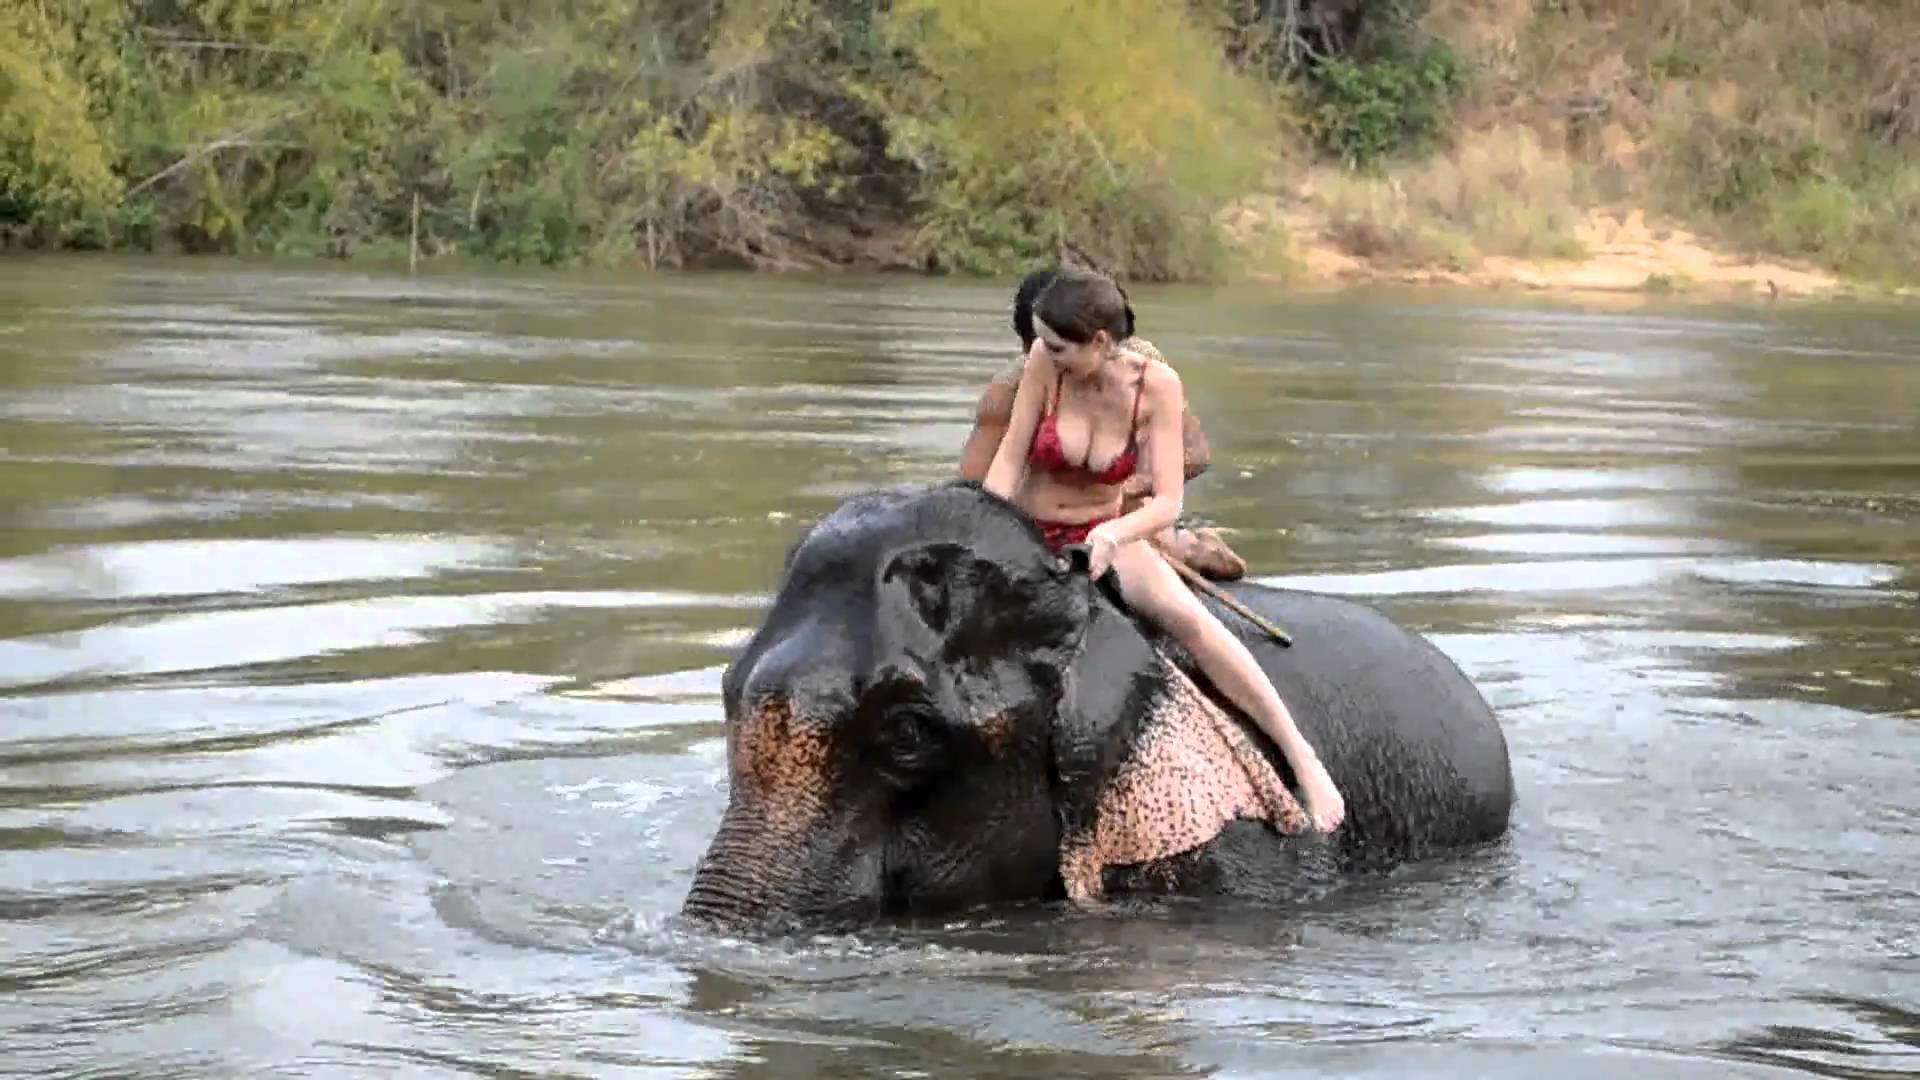 Elephant Bathing - YouTube